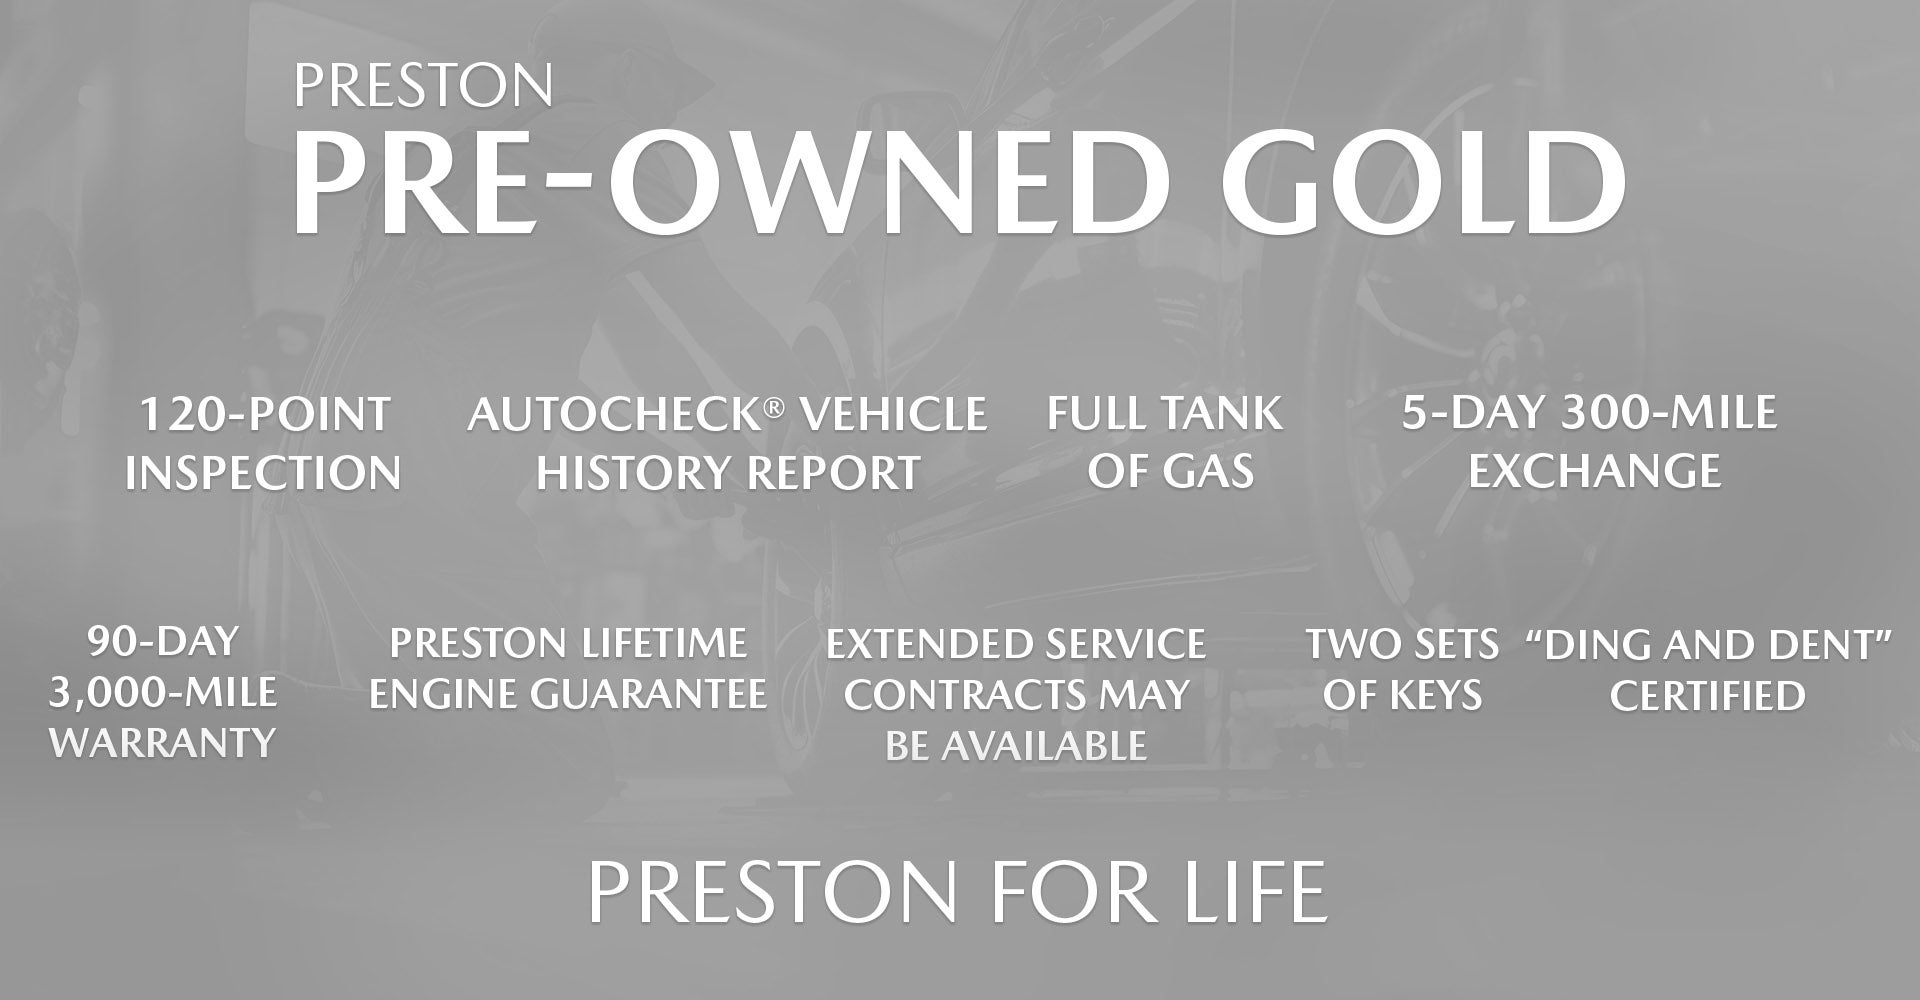 Preston Pre-Owned Gold